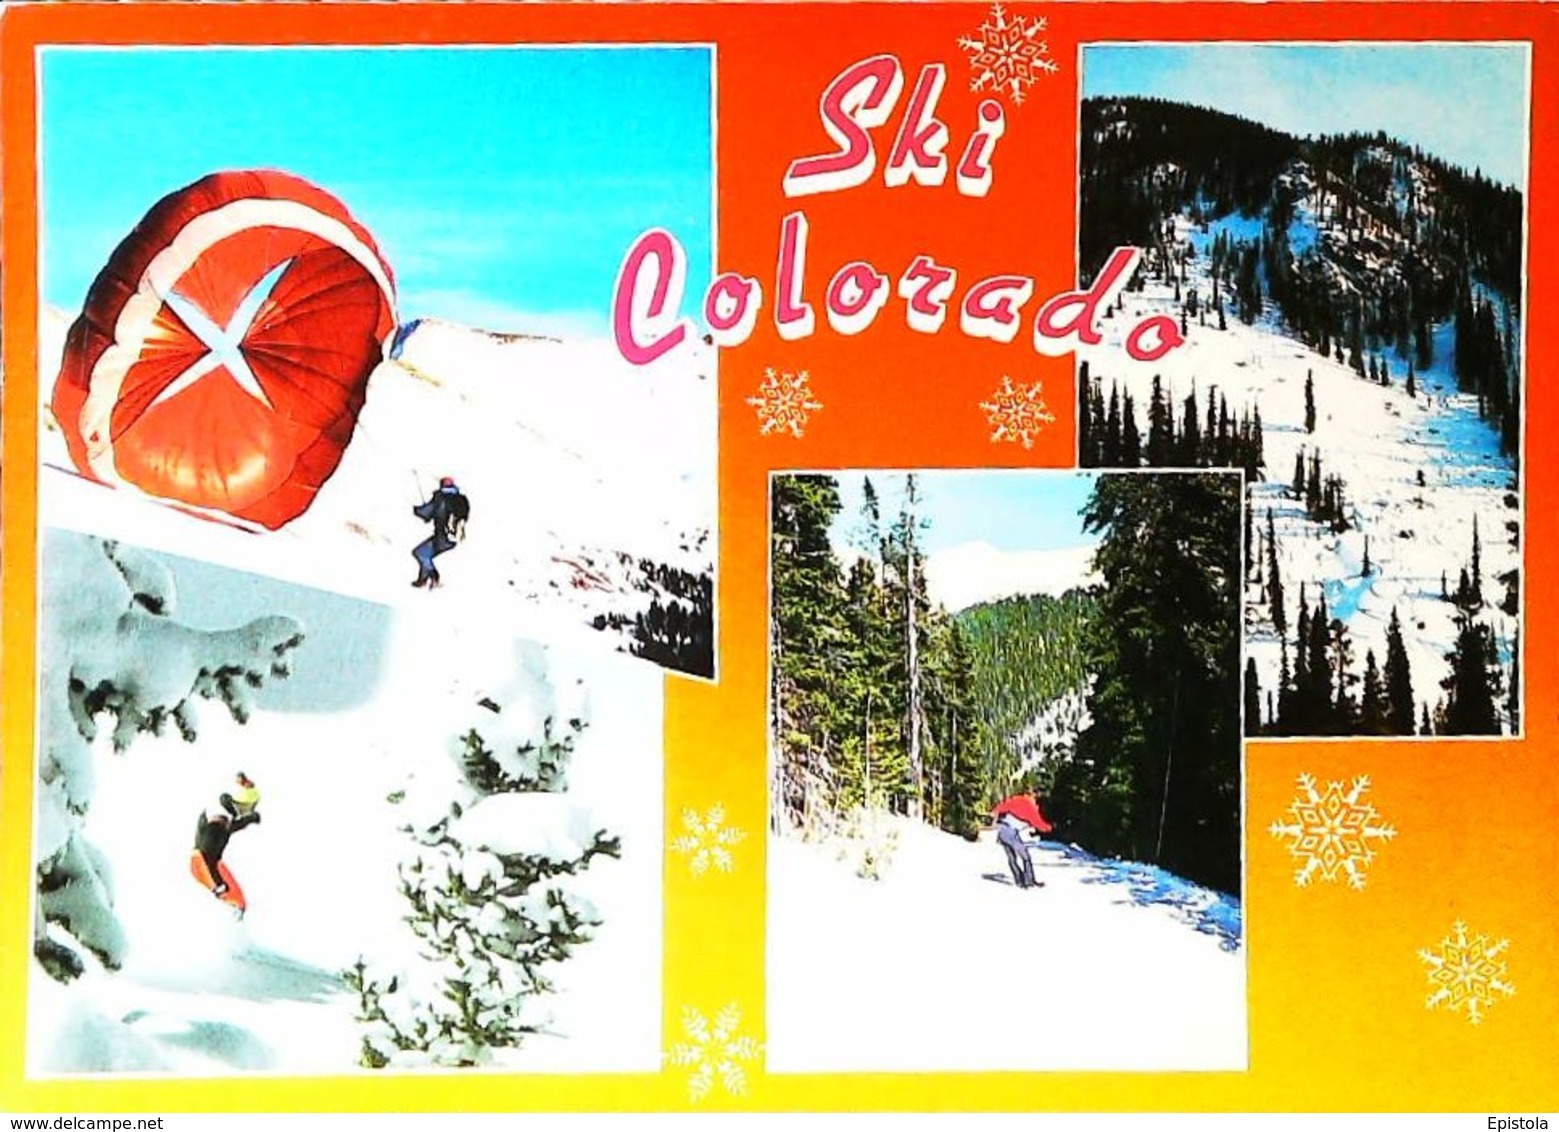 Parachutisme à Ski  "Ski Country & Parachuting" COLORADO -Edt Boulder Co. -  CPM 1980s - Paracaidismo